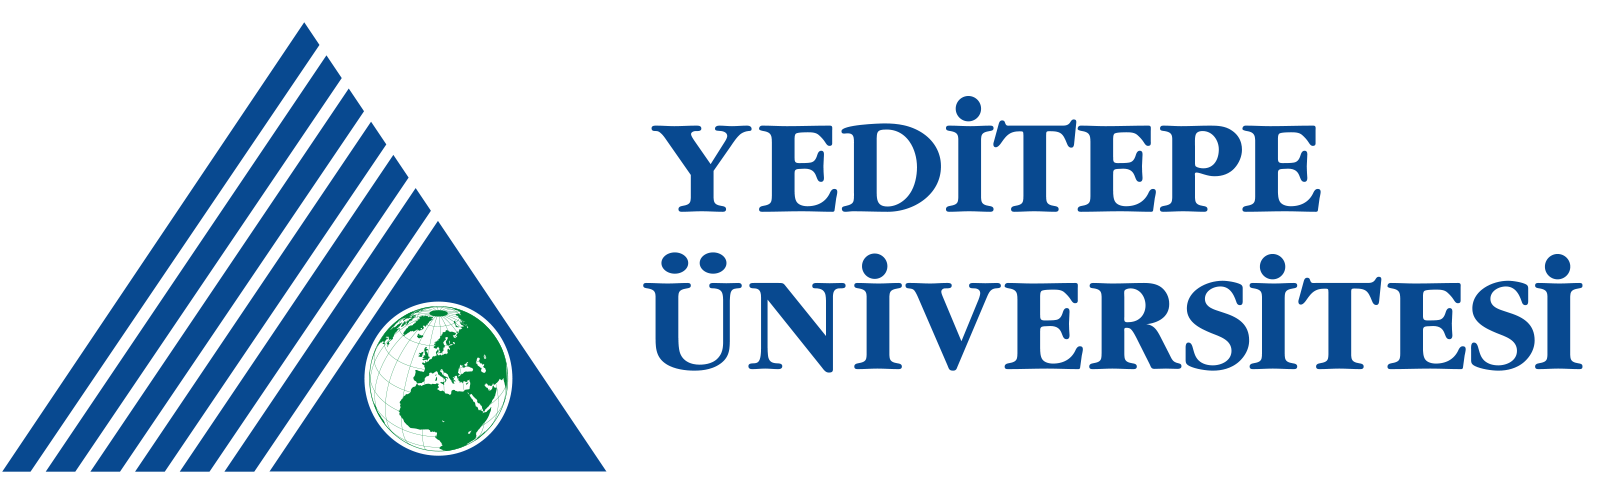 yeditepe-logo